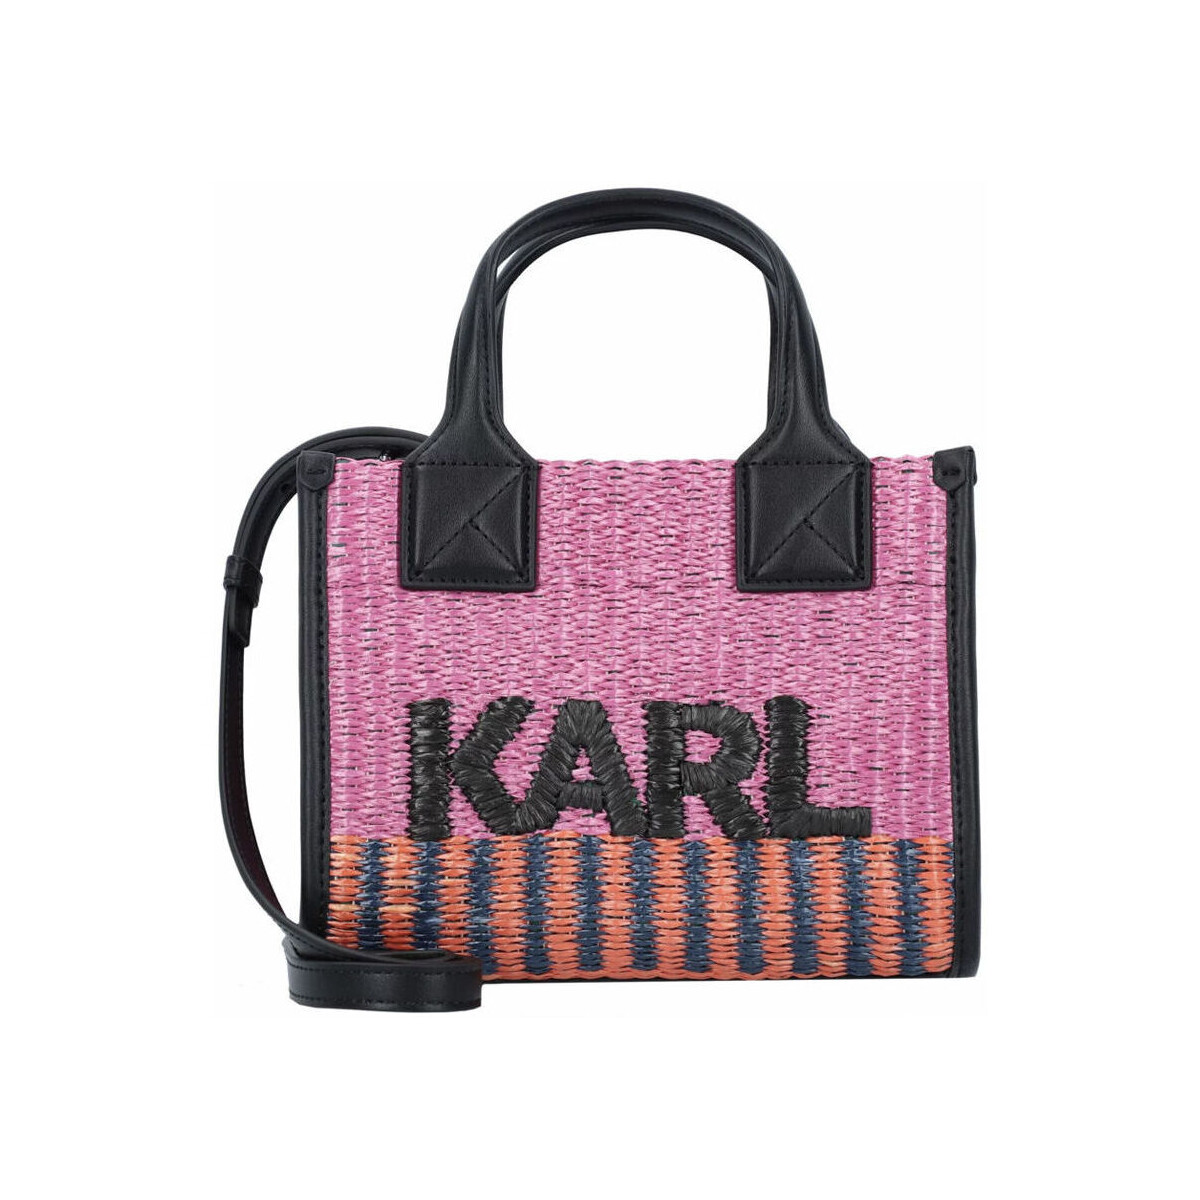 Tassen Dames Tasjes / Handtasjes Karl Lagerfeld - 231W3023 Roze